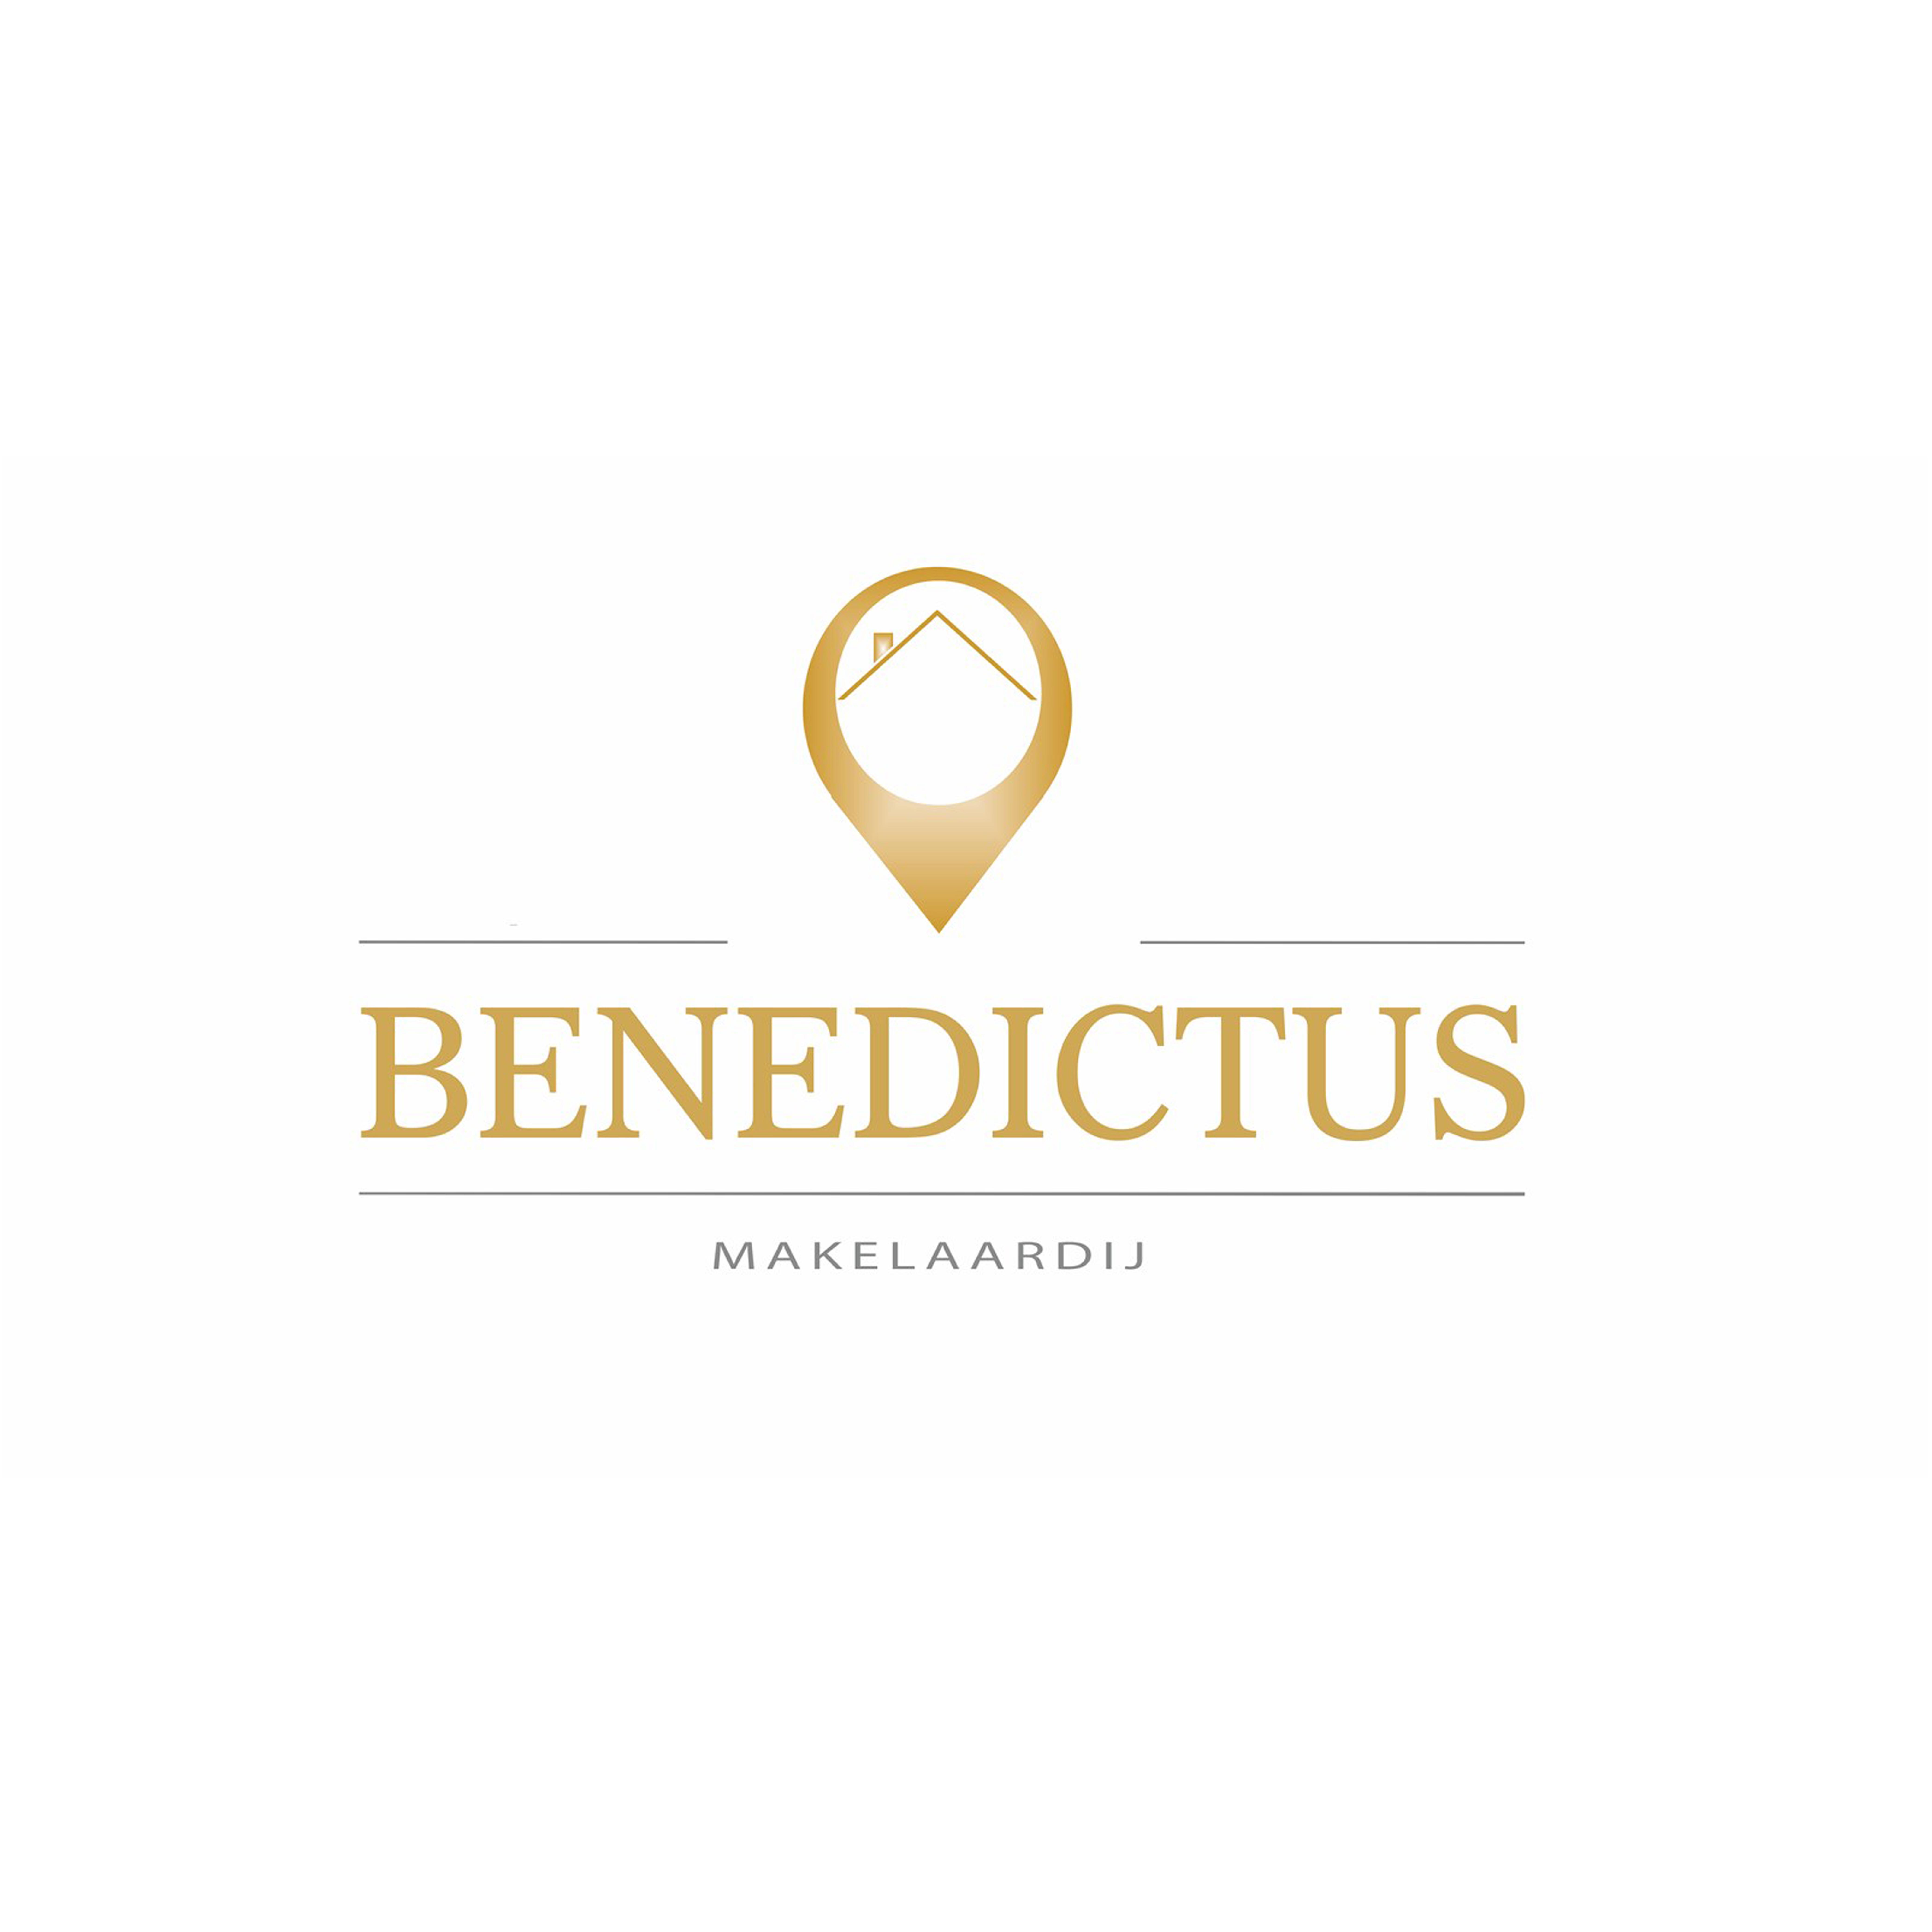 Makelaardij Benedictus